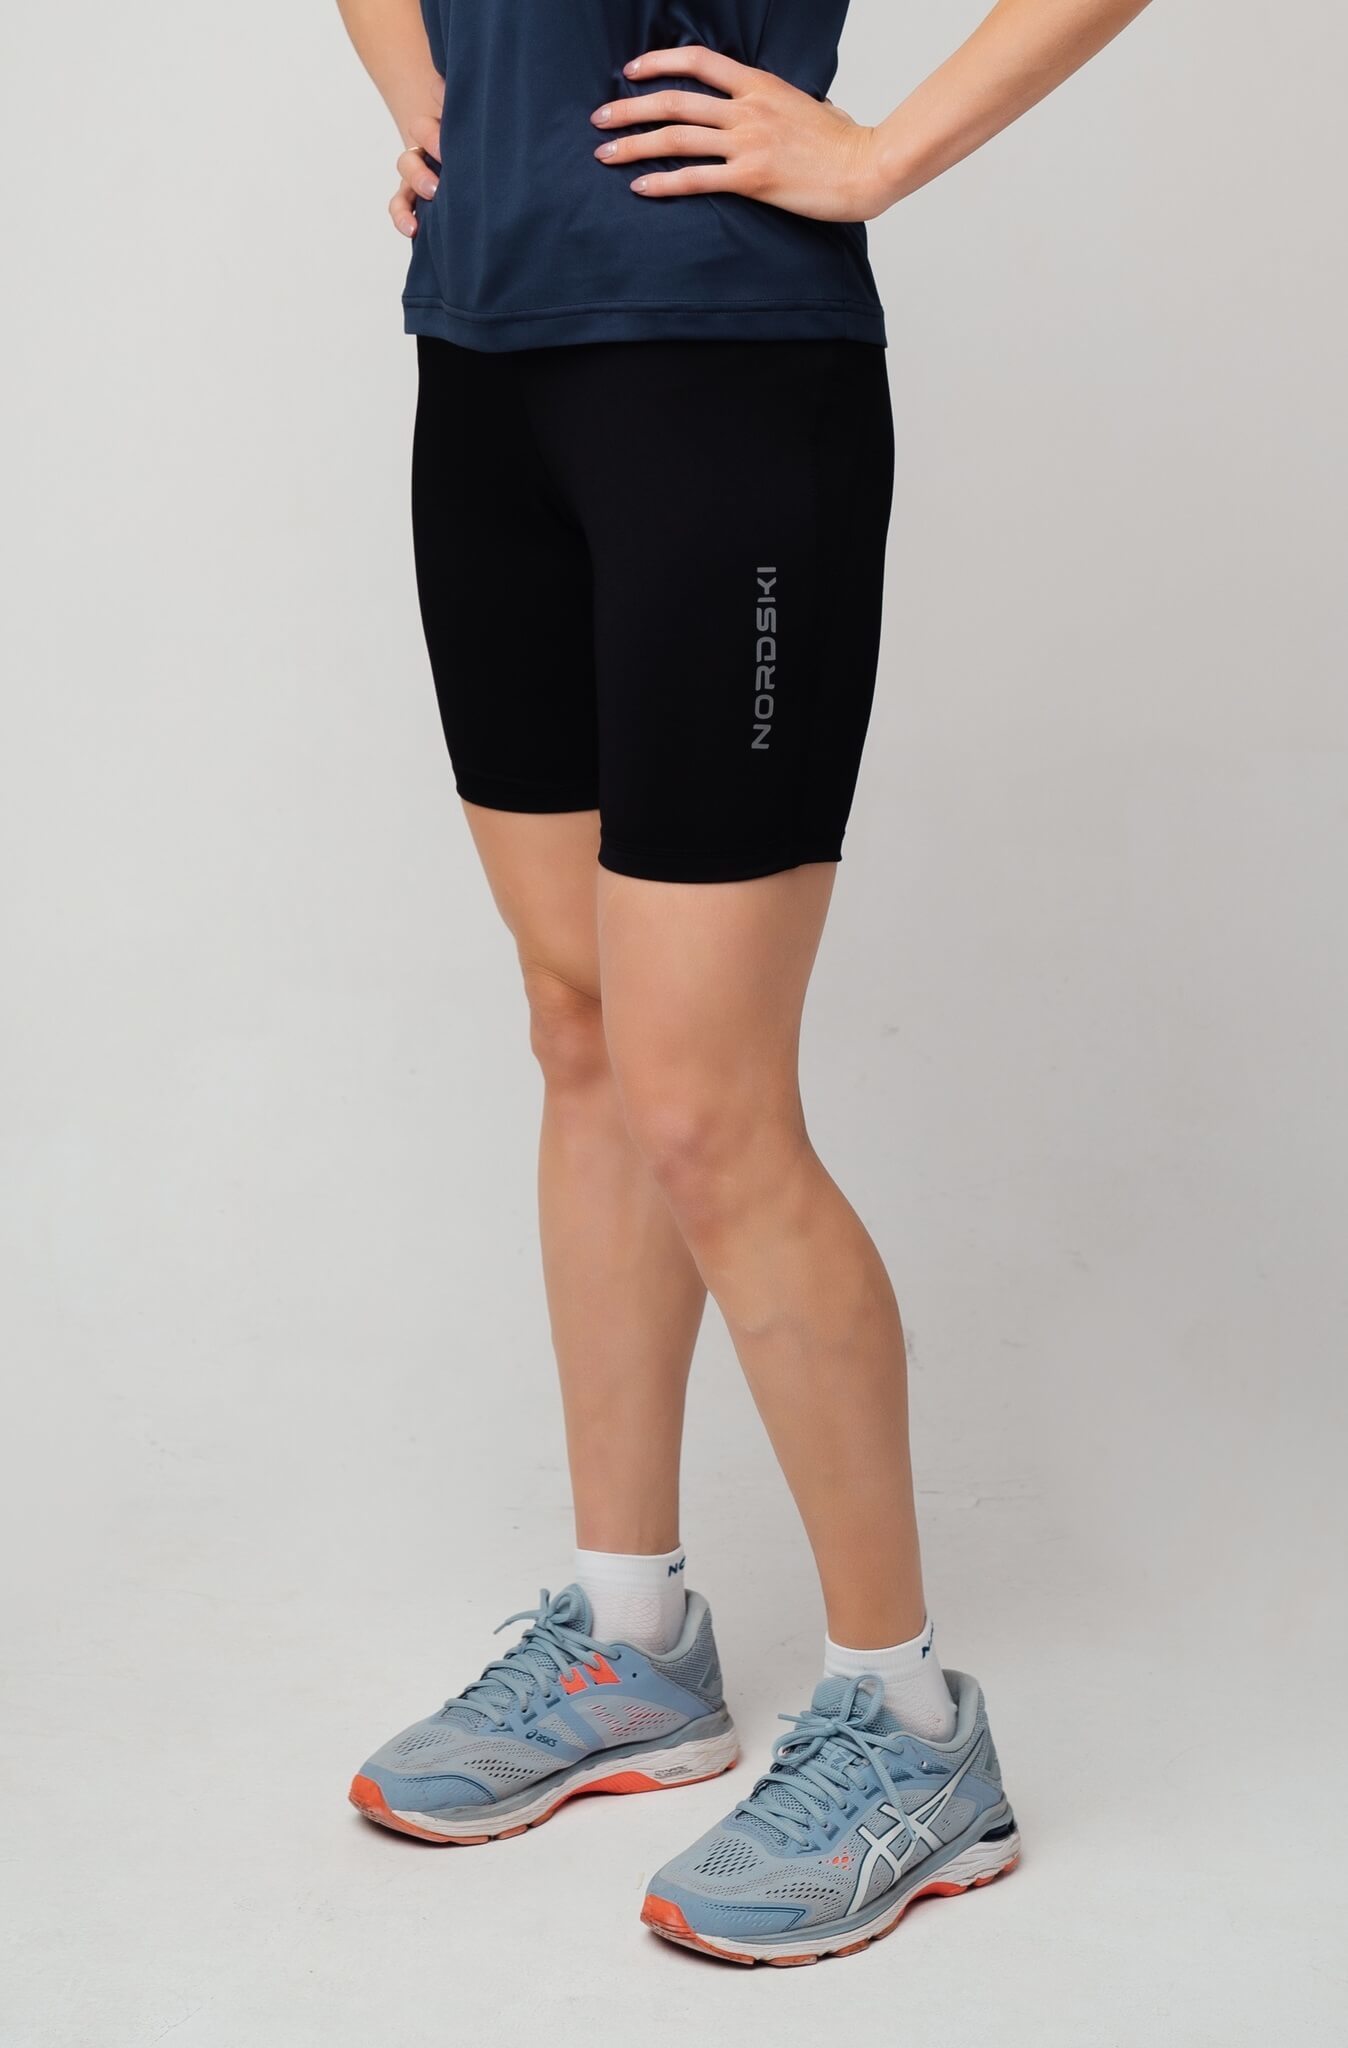 Женские шорты для бега Nordski Premium Run NSW152100 купить в интернет-магазине Five-sport с доставкой по Москве и РФ